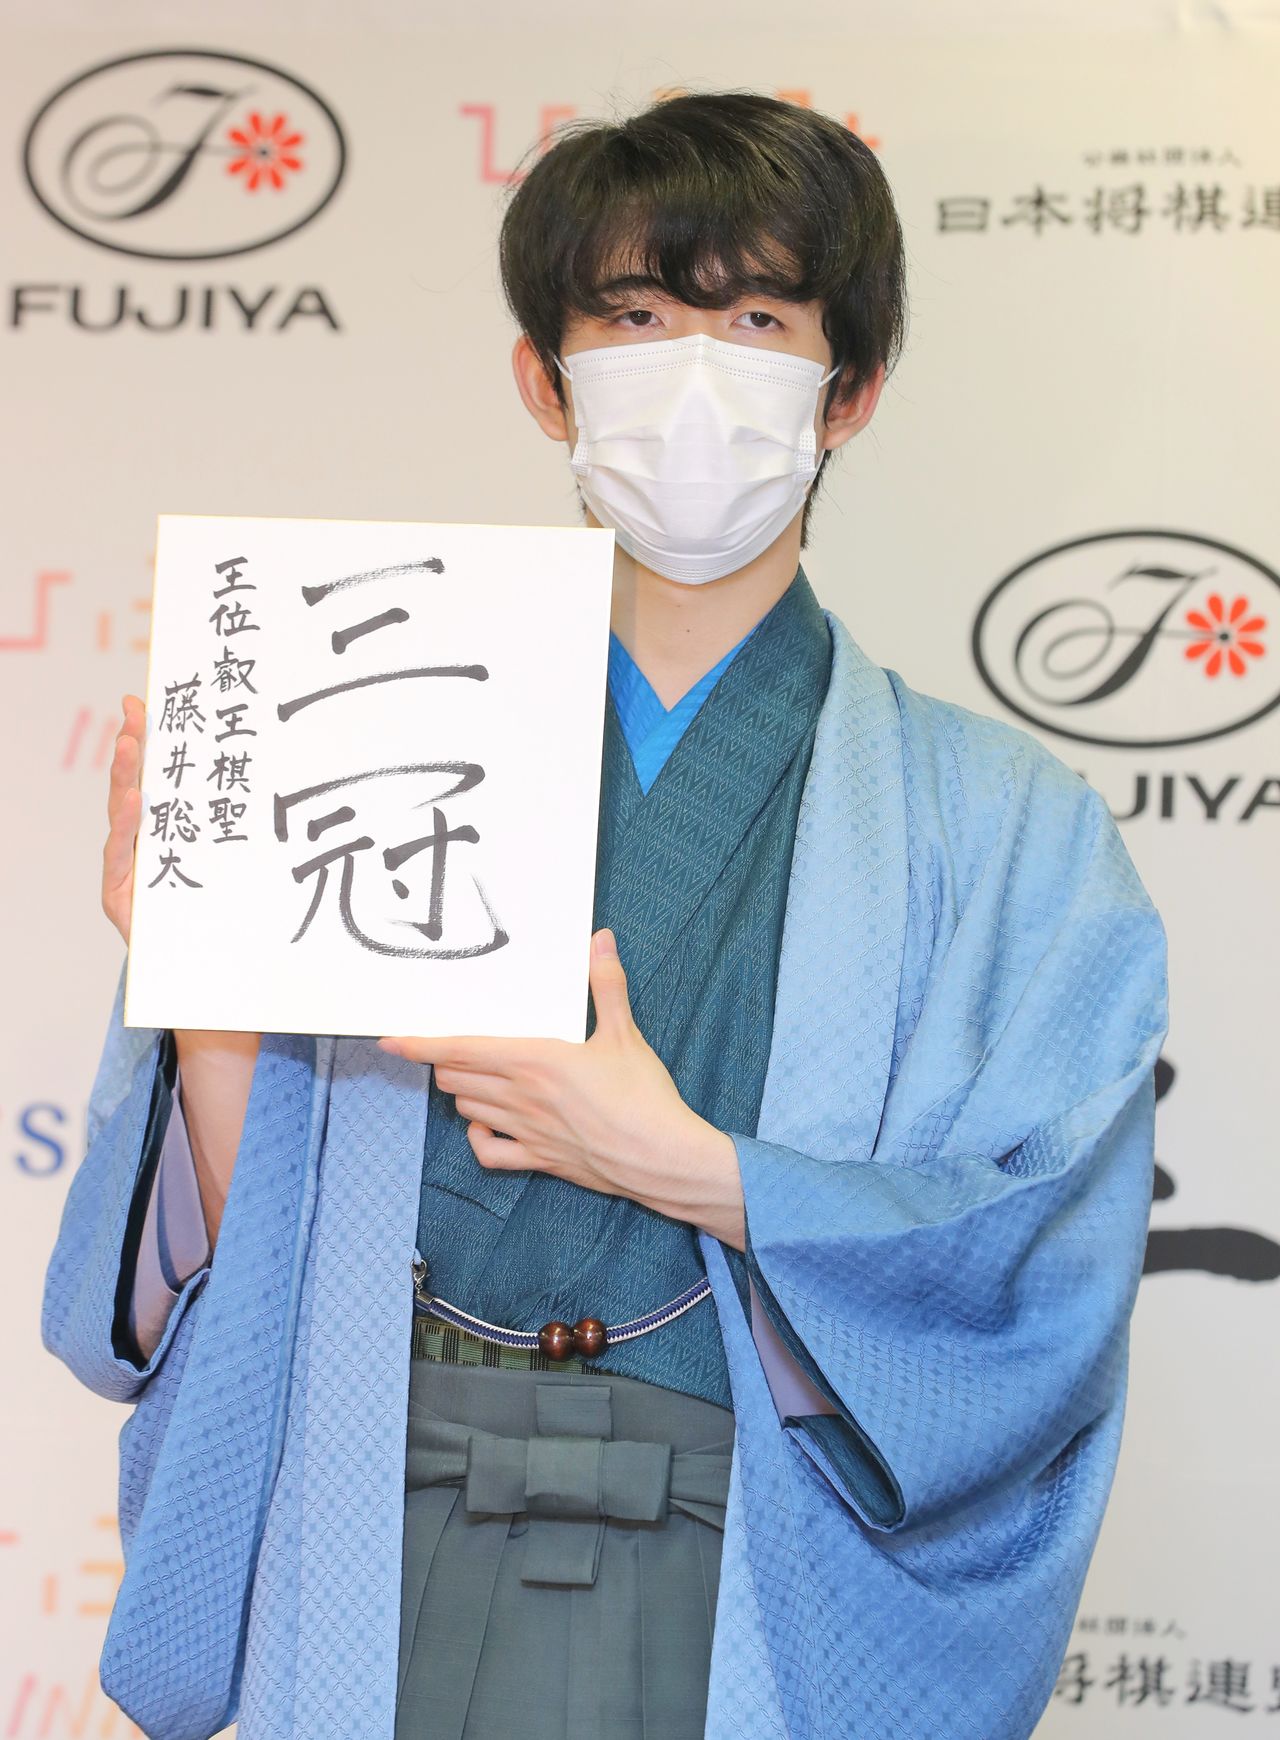 فوجي سوتا بعد حصوله على لقب إيؤو في طوكيو في الثالث عشر من سبتمبر/ أيلول 2021 (جيجي برس).